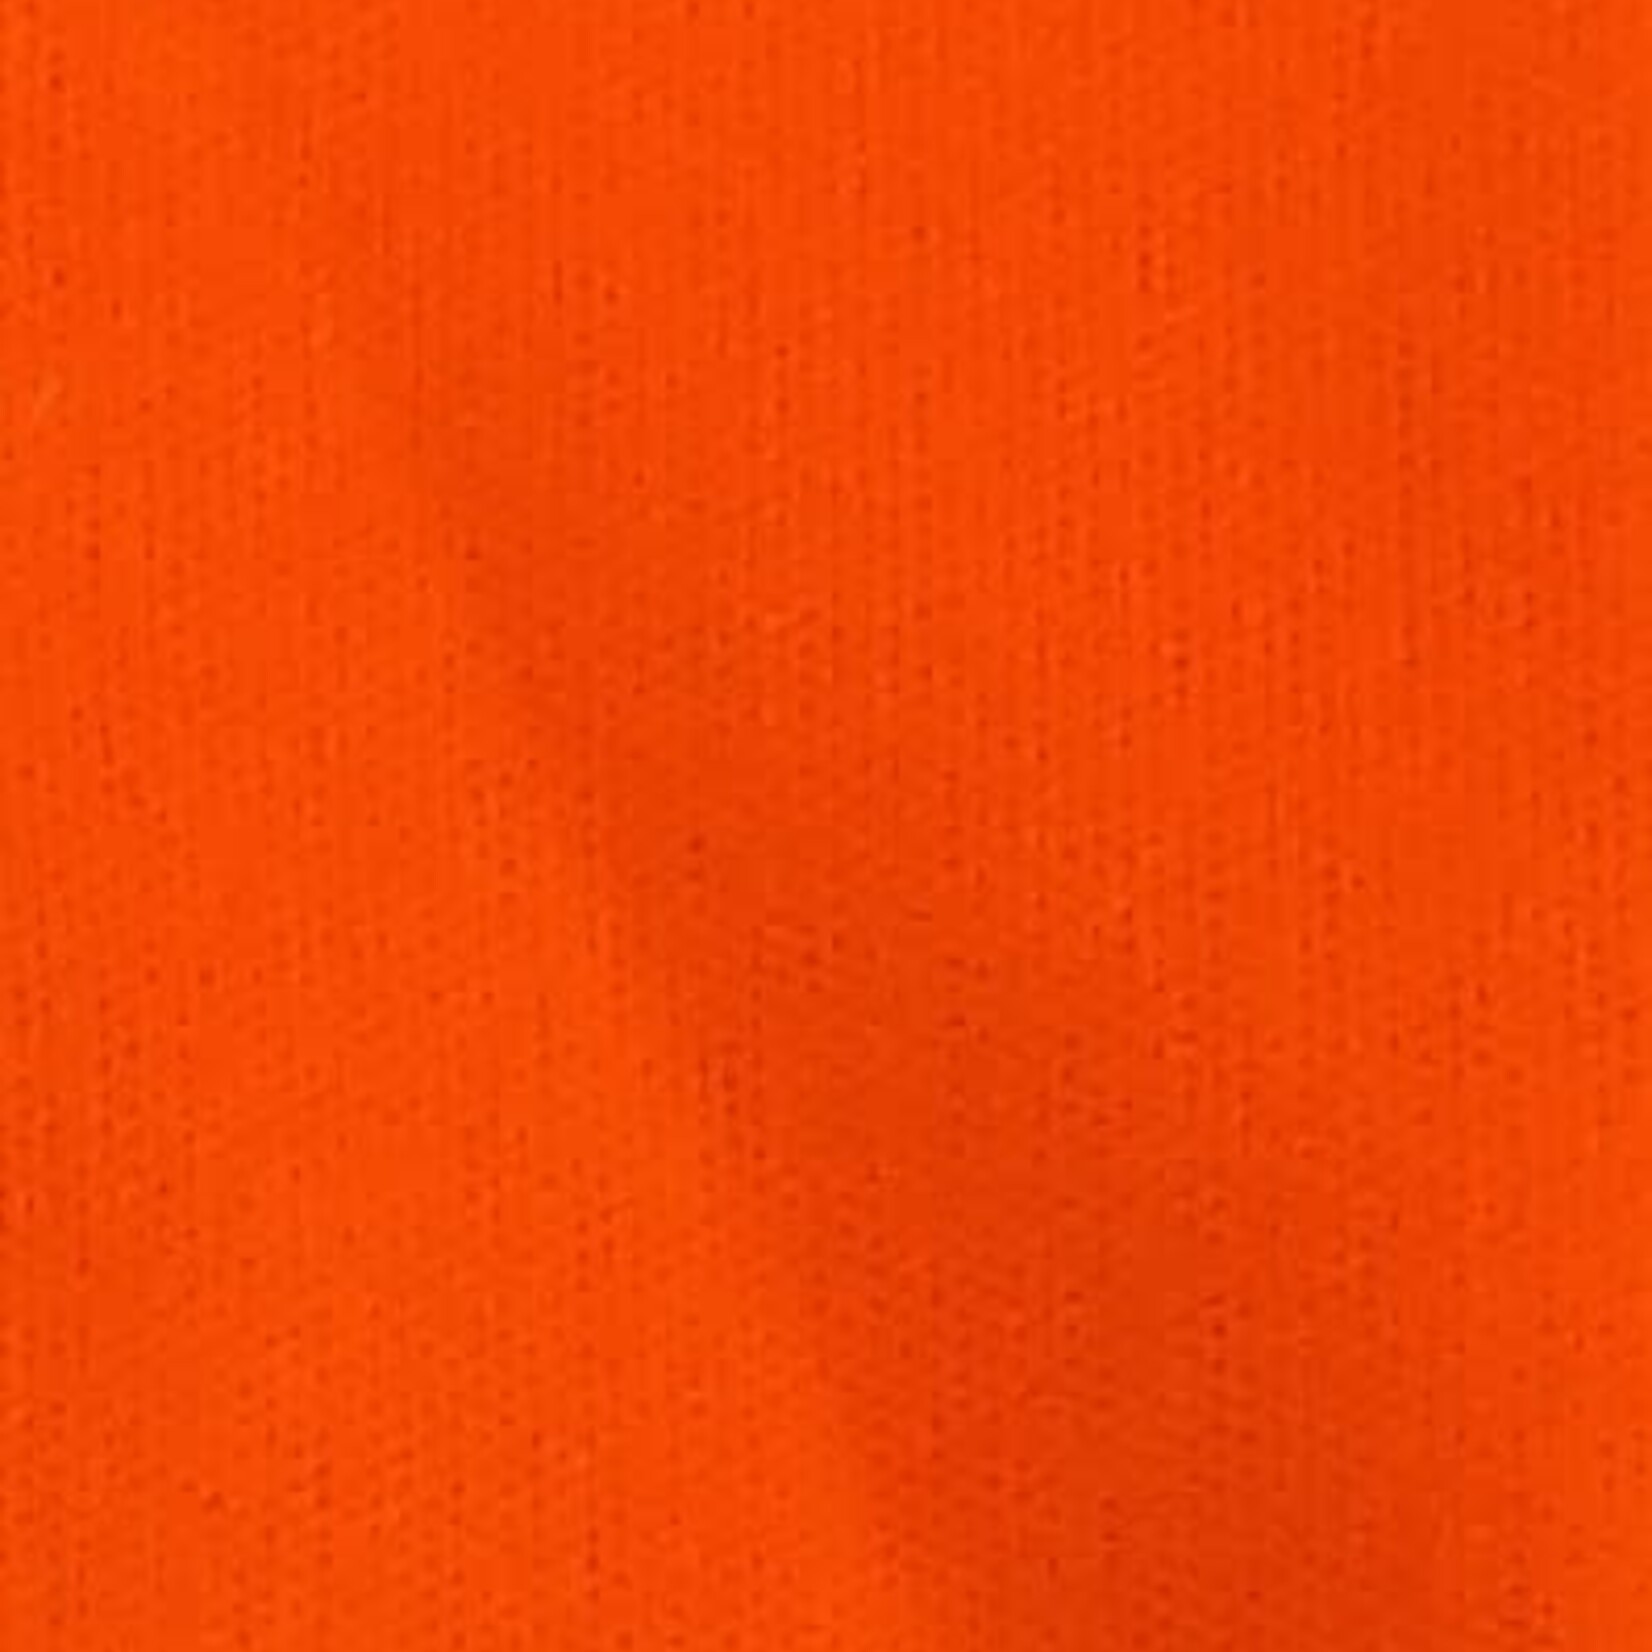 Plain Quiana 60 Inches Bright/Burnt Orange